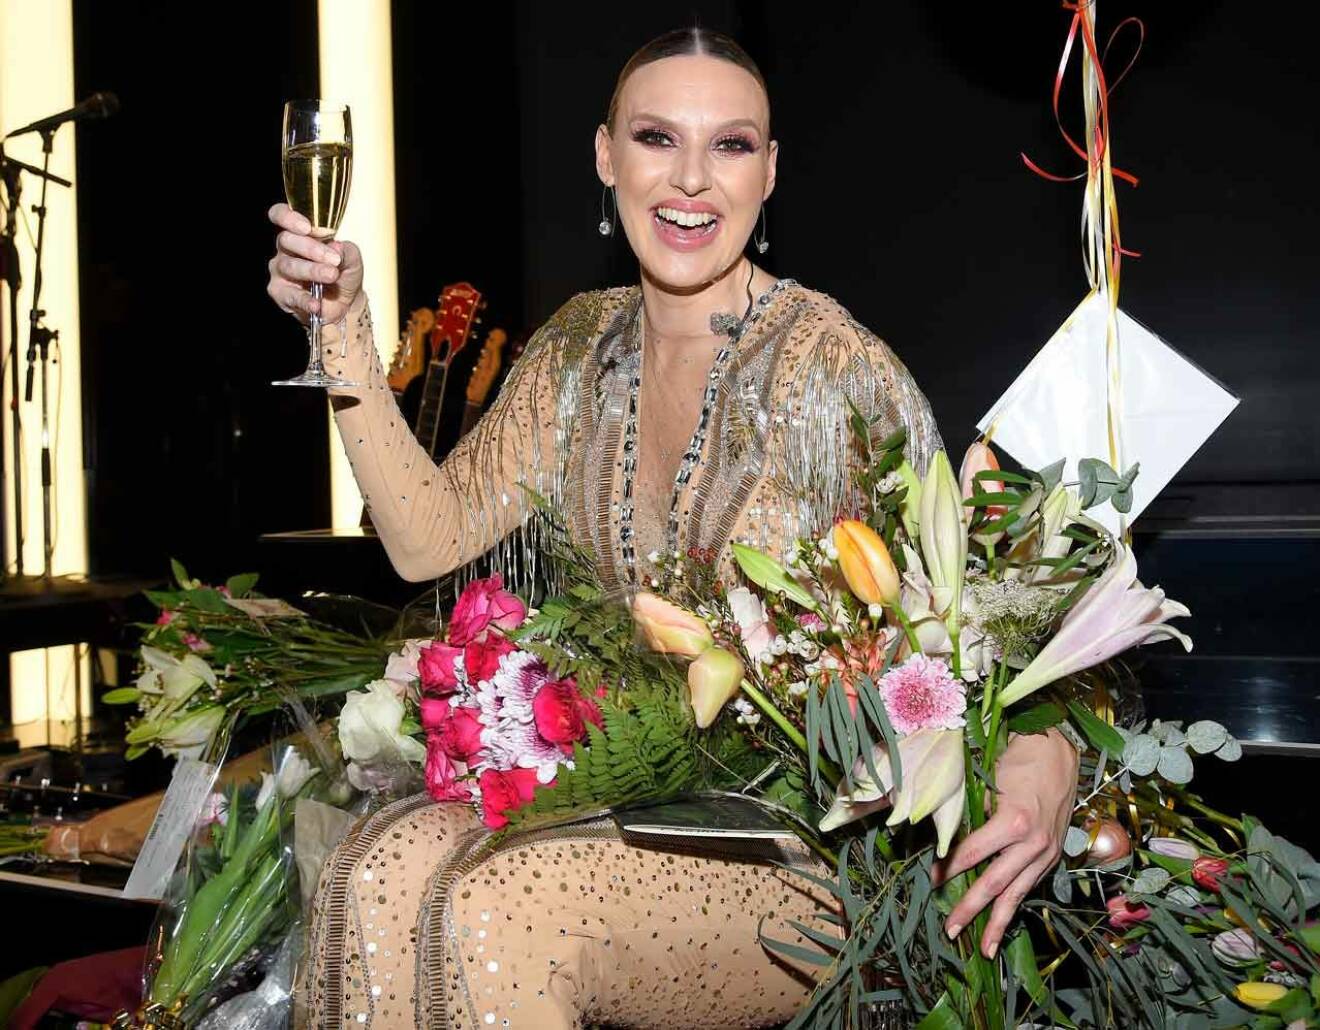 Äntligen! Sanna Nielsen skålar i champagne efter den lyckade premiären. – Det känns fantastiskt! Jag har längtat så mycket!